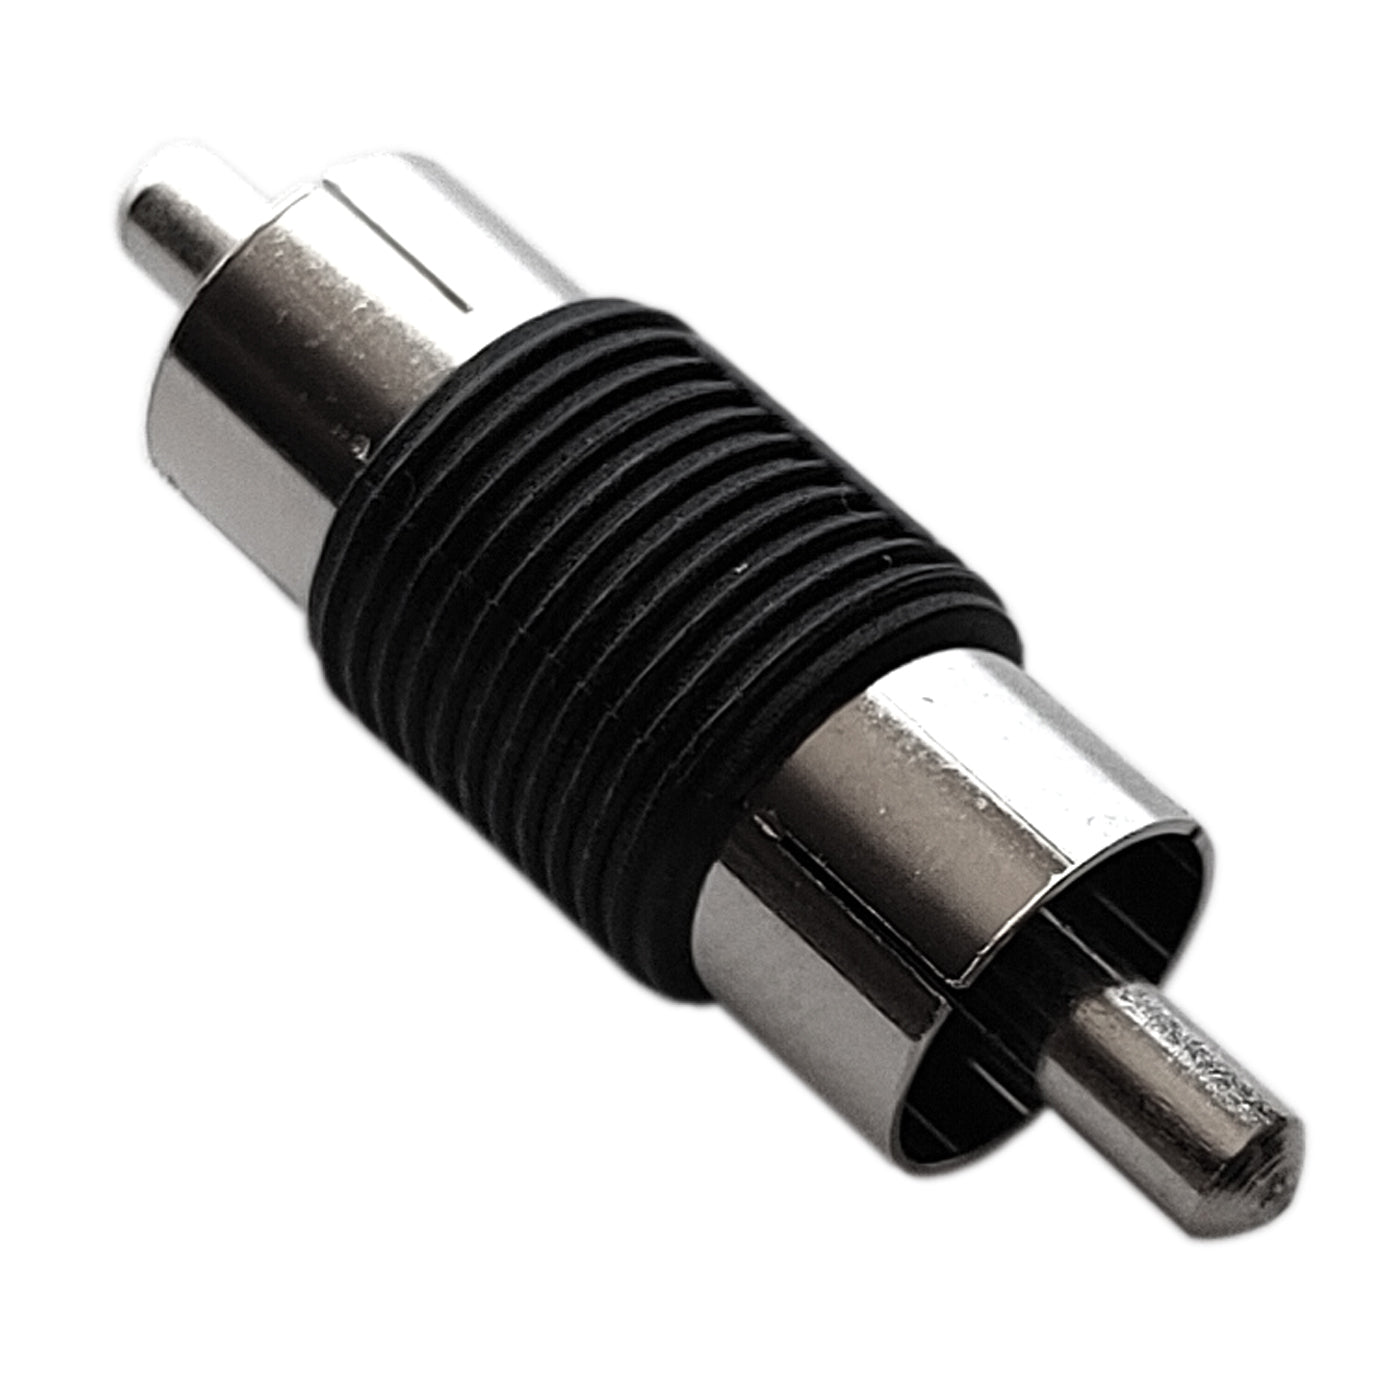 2x Cinch Verbinder Stecker/Stecker Adapter Verbindung Kupplung Verbindungsstück